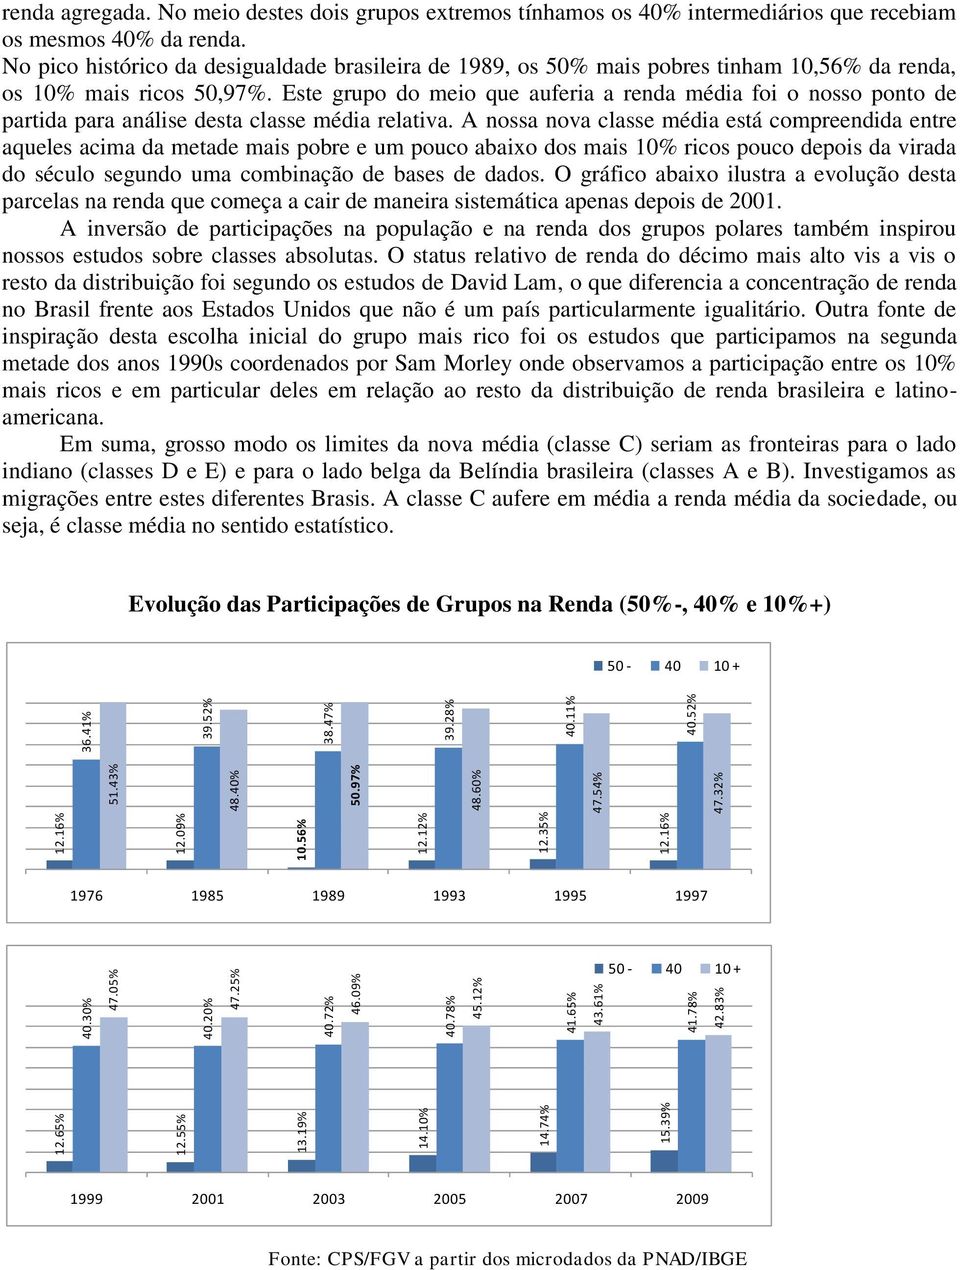 No pico histórico da desigualdade brasileira de 1989, os 50% mais pobres tinham 10,56% da renda, os 10% mais ricos 50,97%.